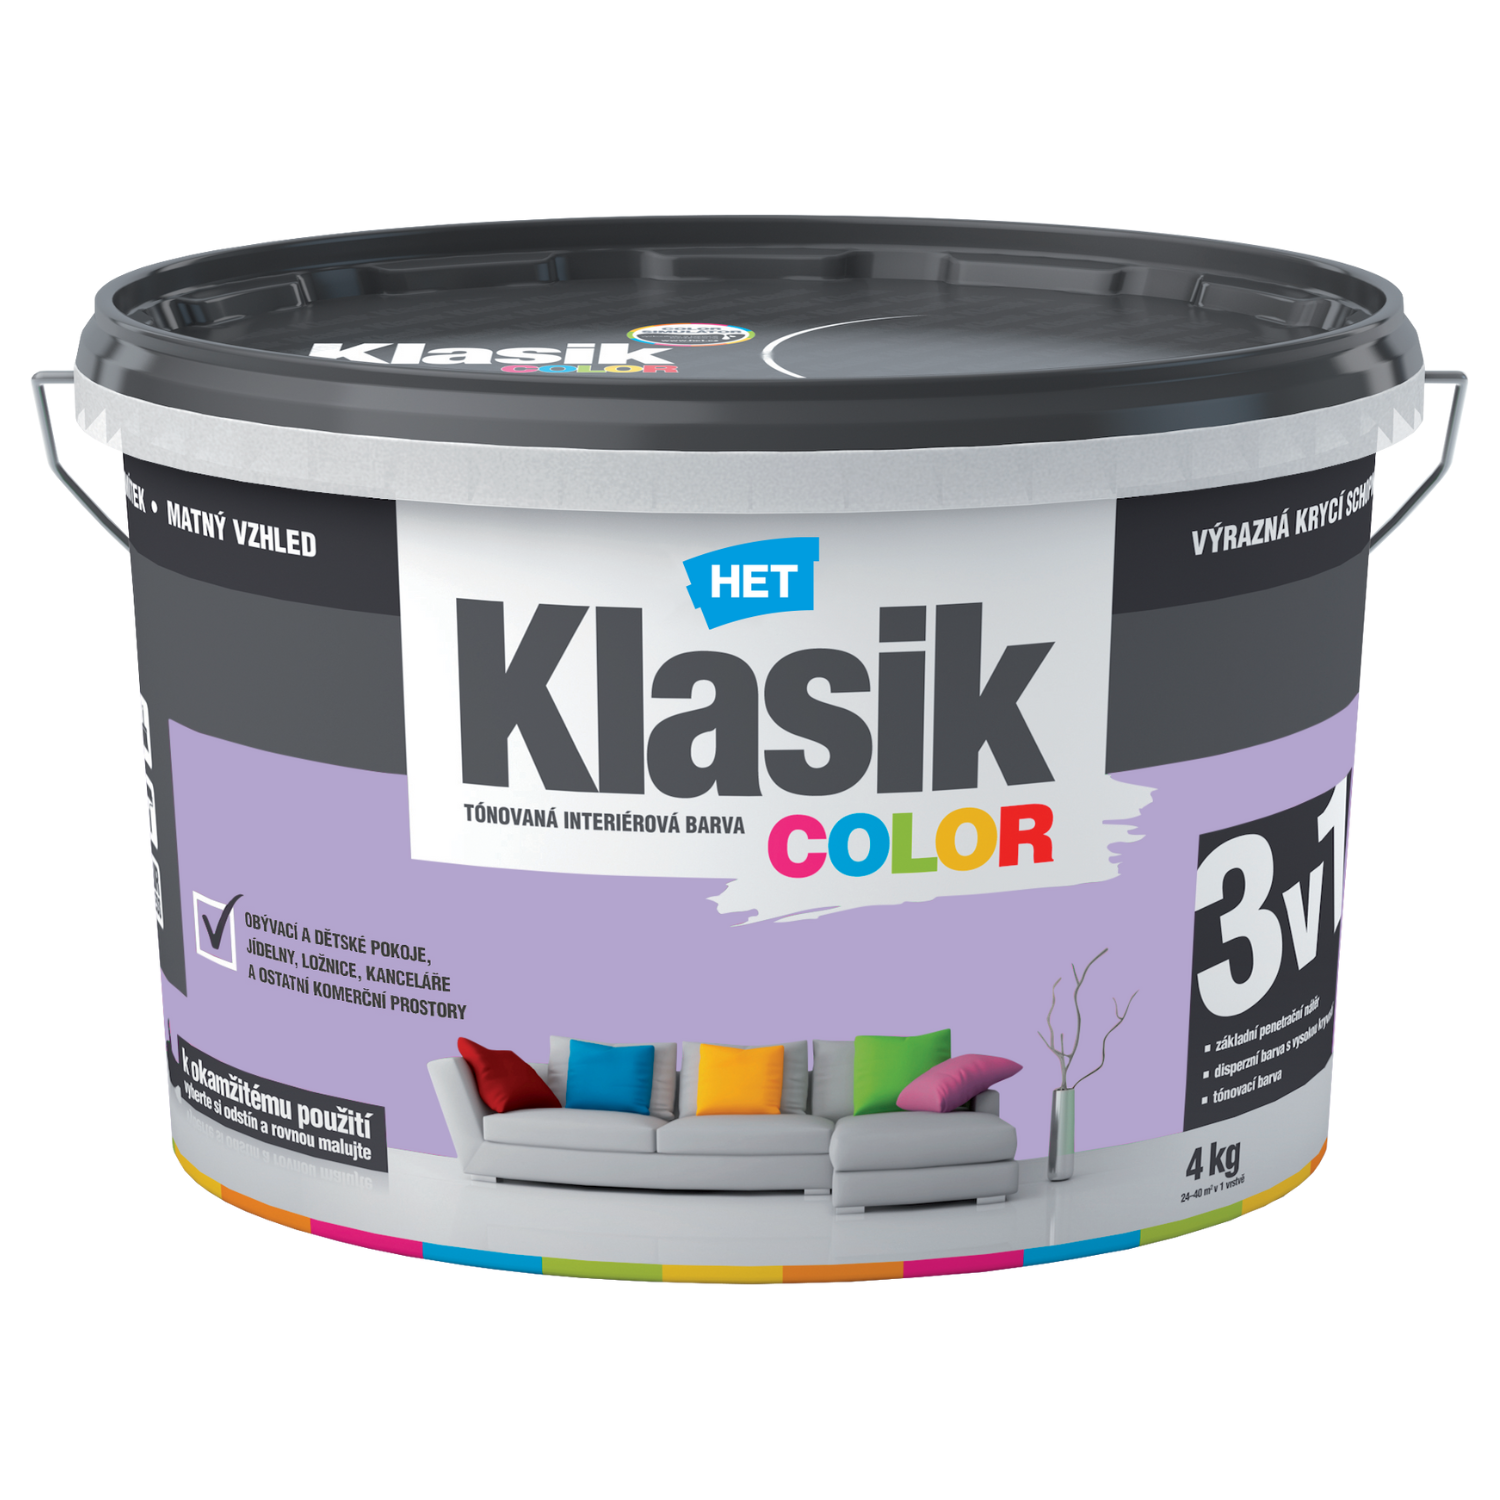 HET Klasik COLOR tónovaná interiérová akrylátová disperzná oteruvzdorná farba 4 kg, KC0317 - purpurový